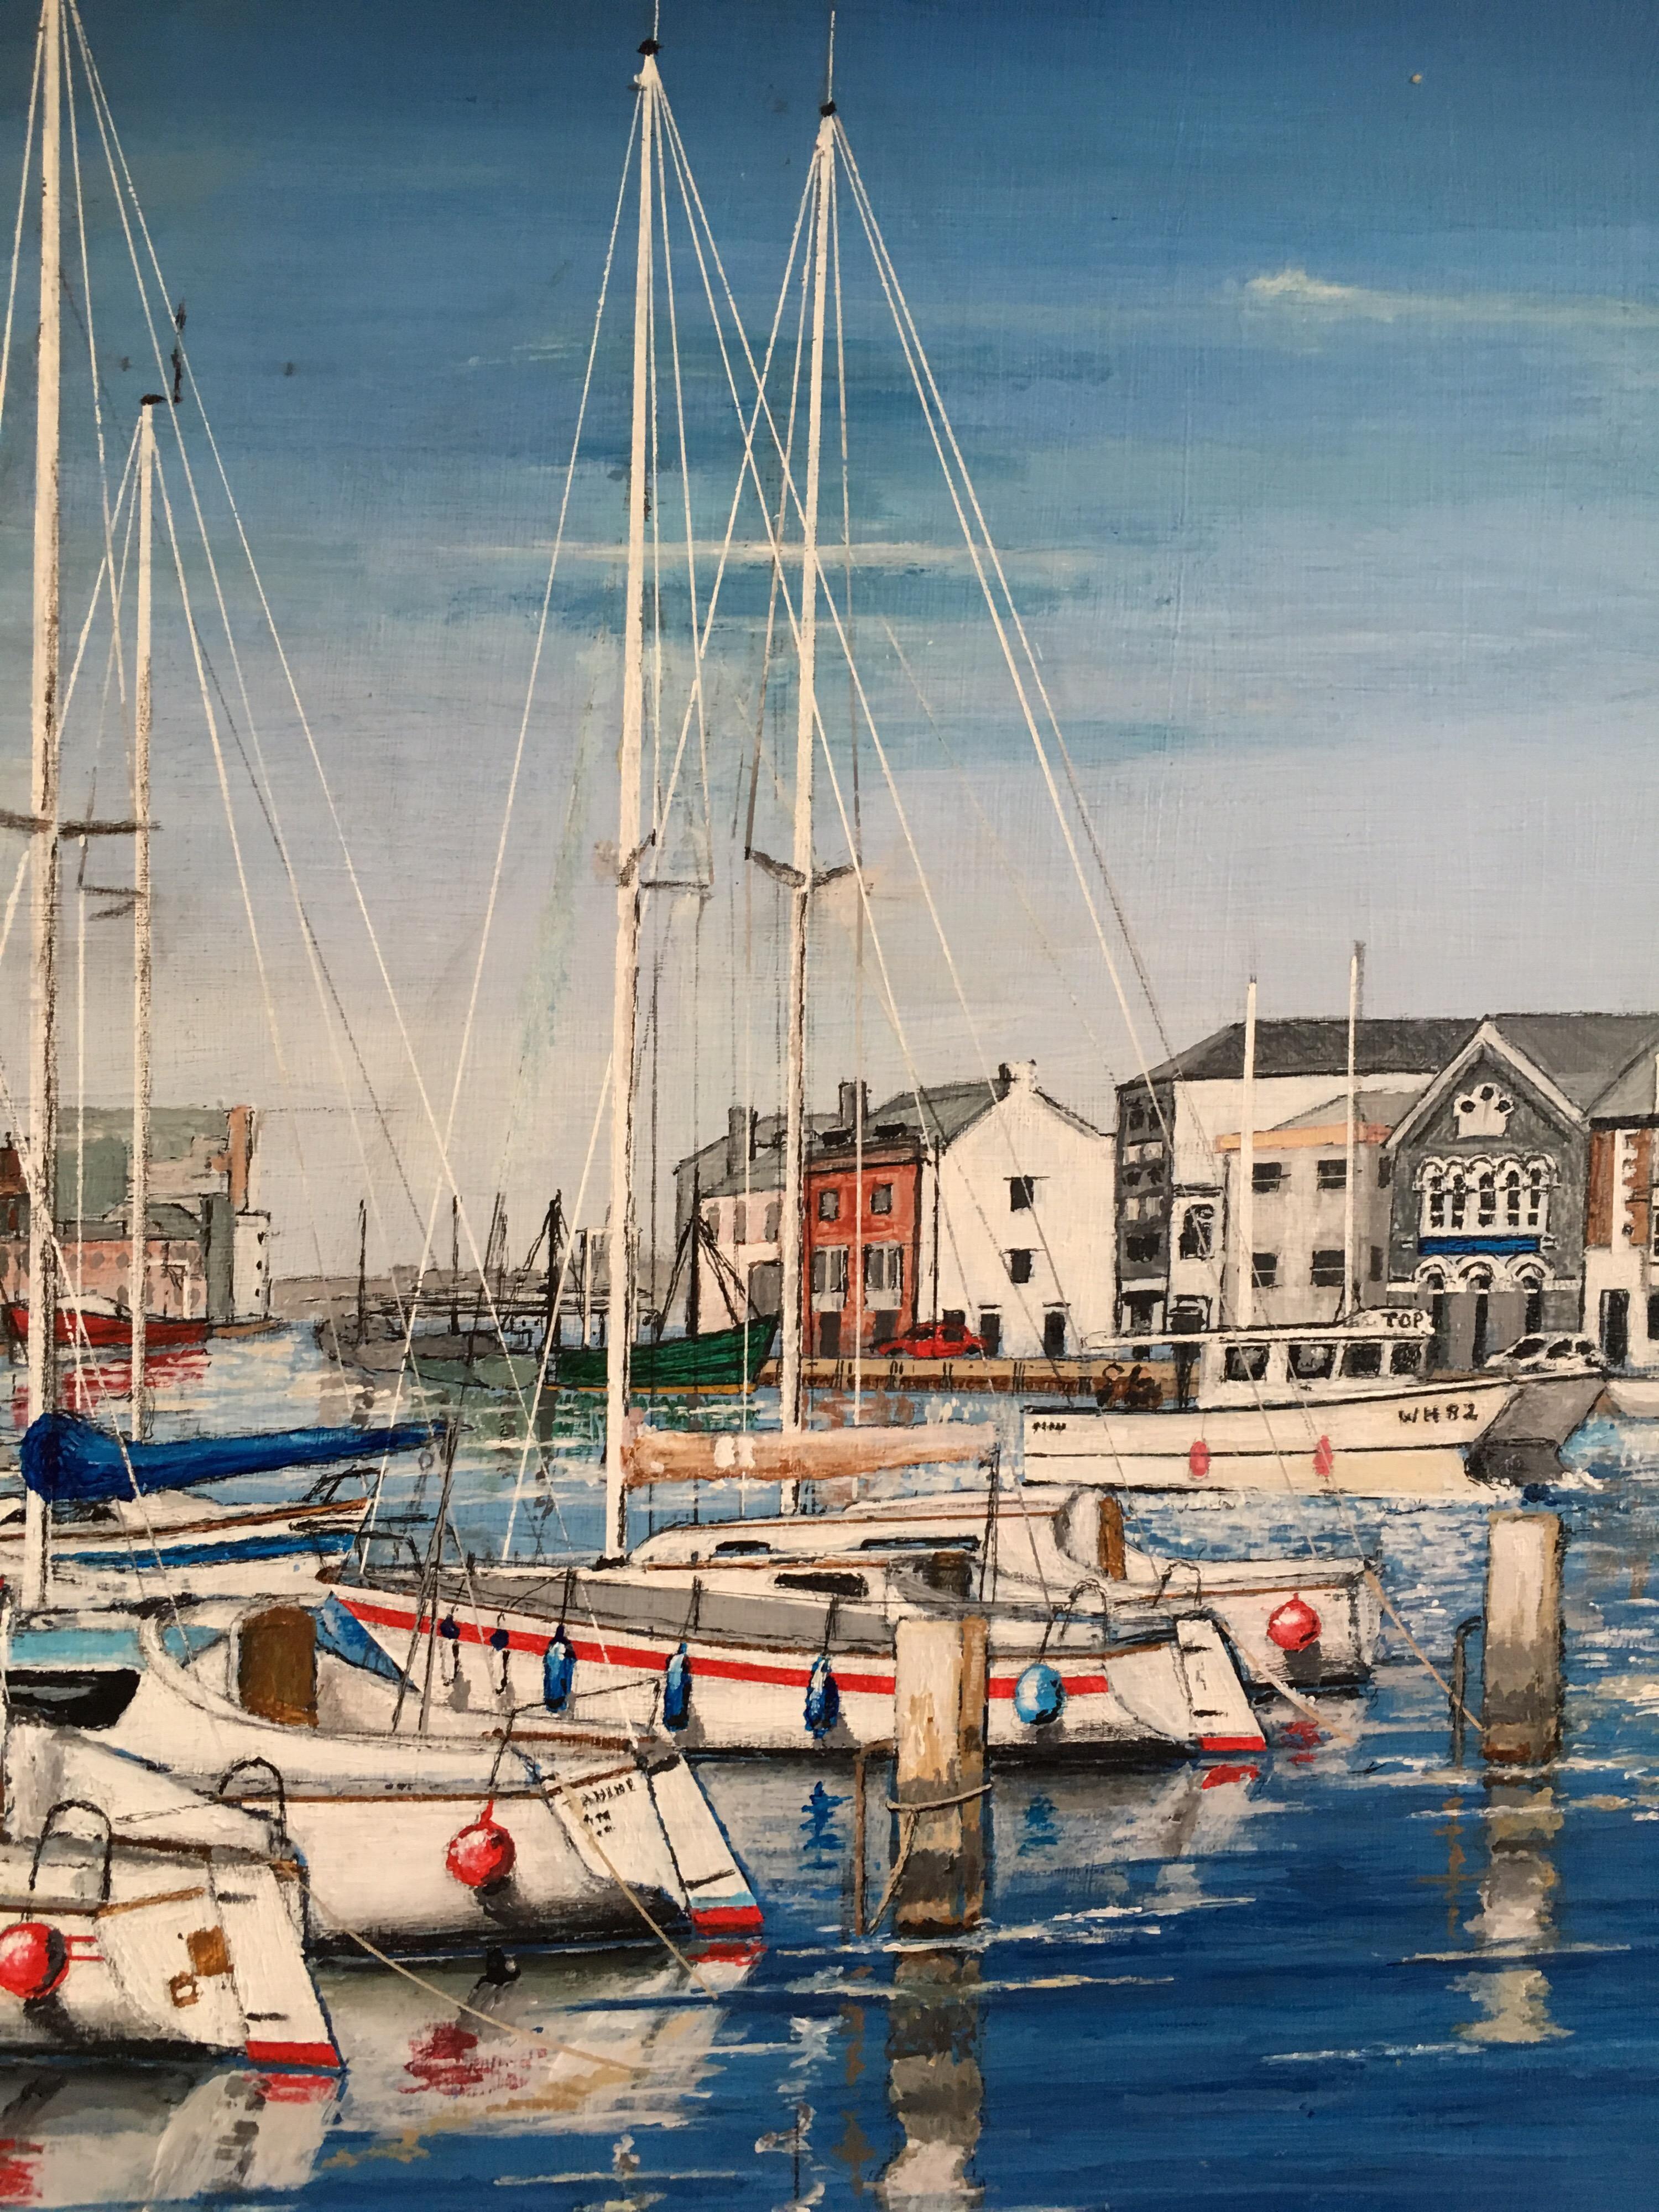 Le port, paysage à thème nautique Grande peinture à l'huile signée
par Peter Nichols, artiste contemporain britannique
peinture à l'huile sur carton, non encadrée
signé par l'artiste dans l'angle en bas à gauche
taille du tableau : 18 x 24